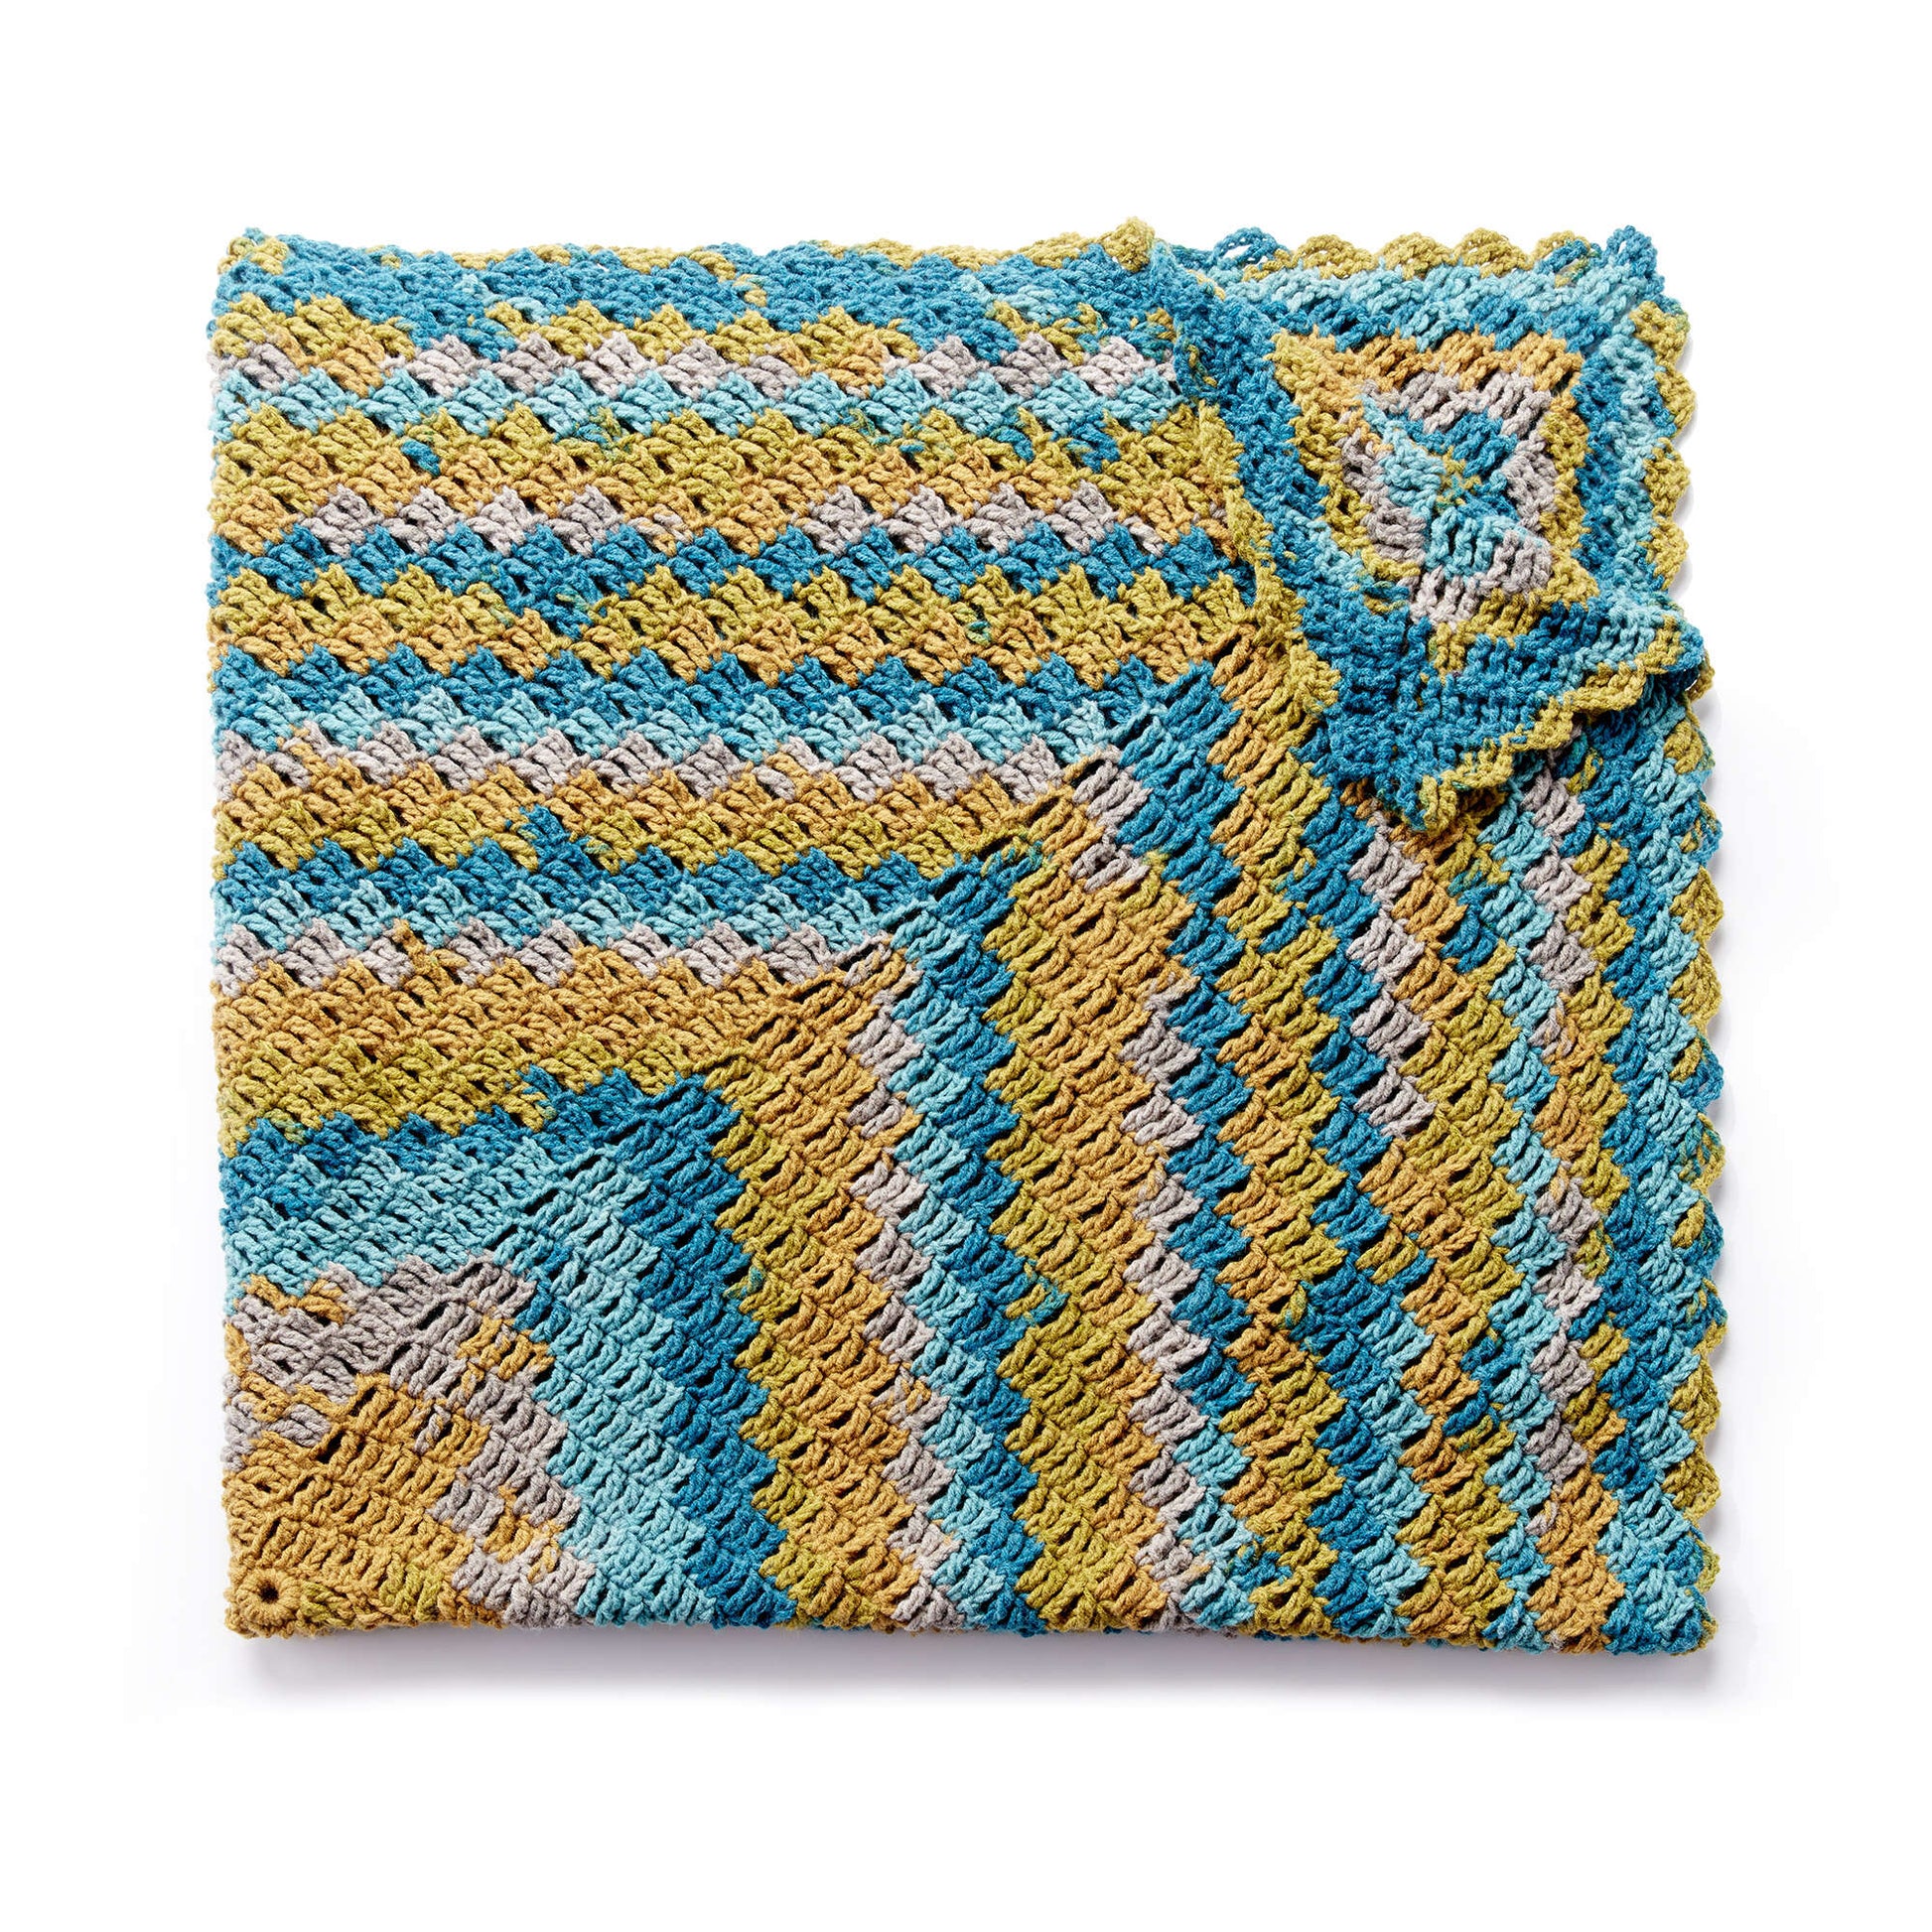 Free Caron Stacking Blocks Crochet Blanket Pattern